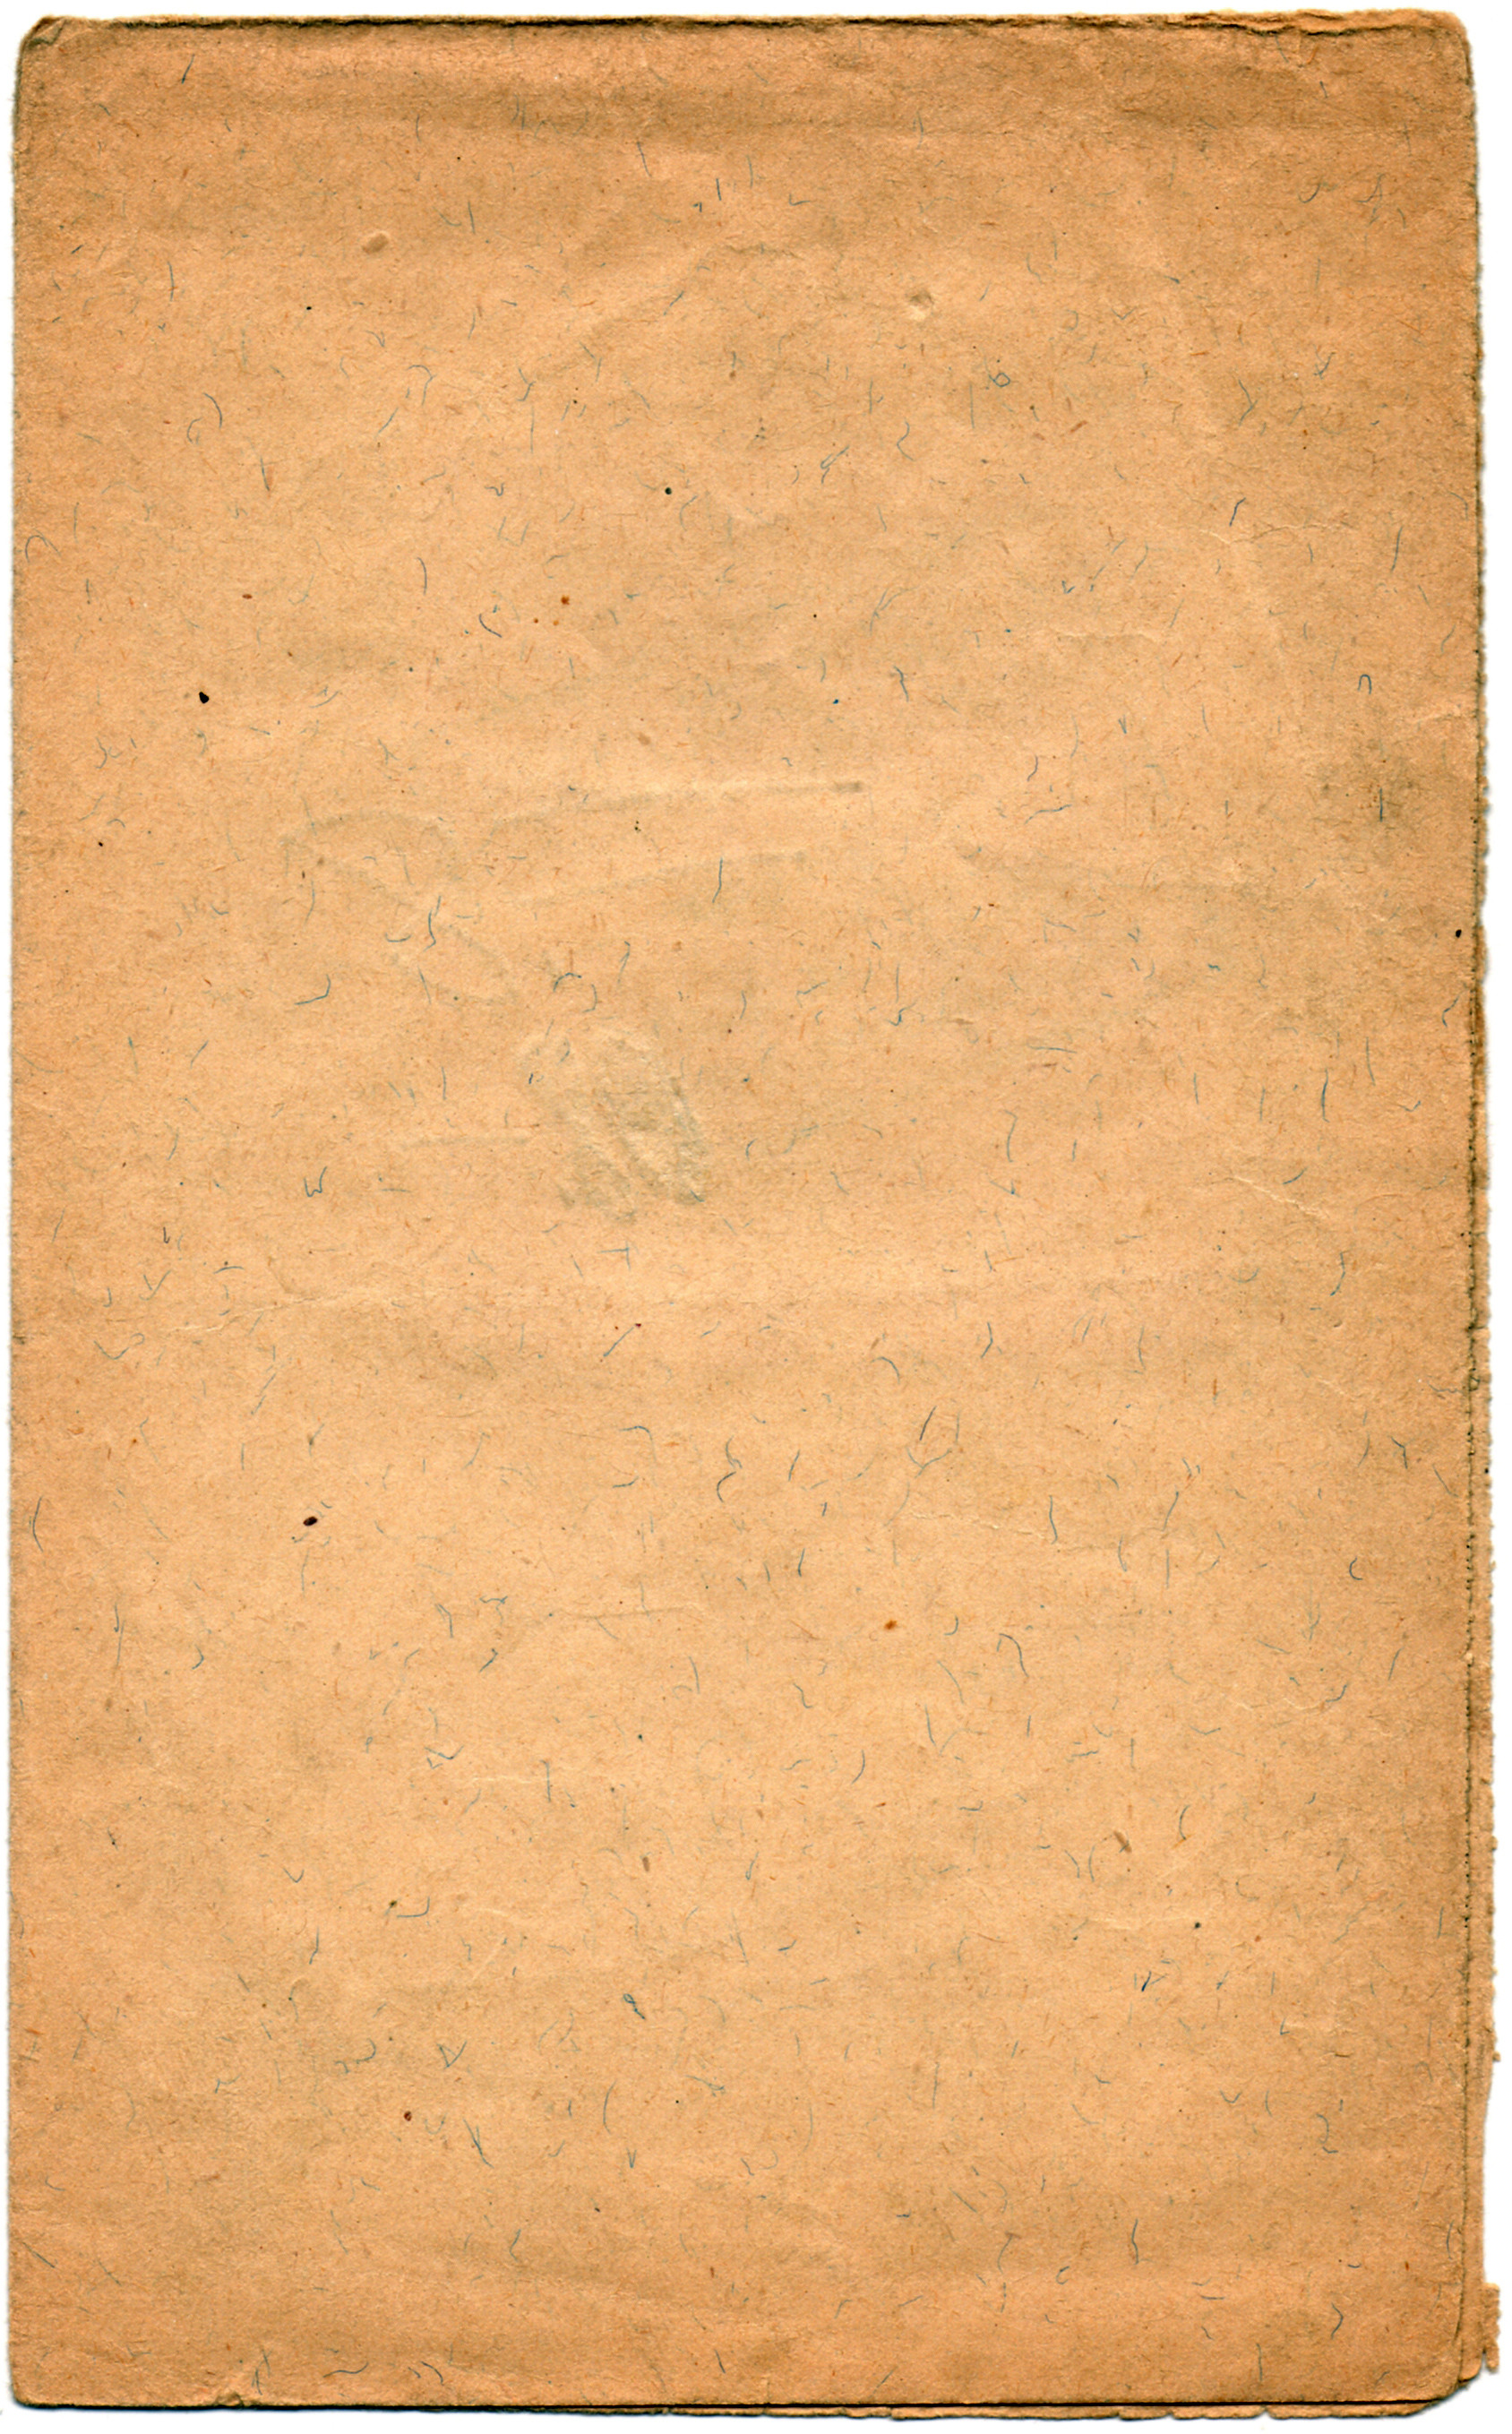 1688x2717 Paper Bag Wallpaper - WallpaperSafari